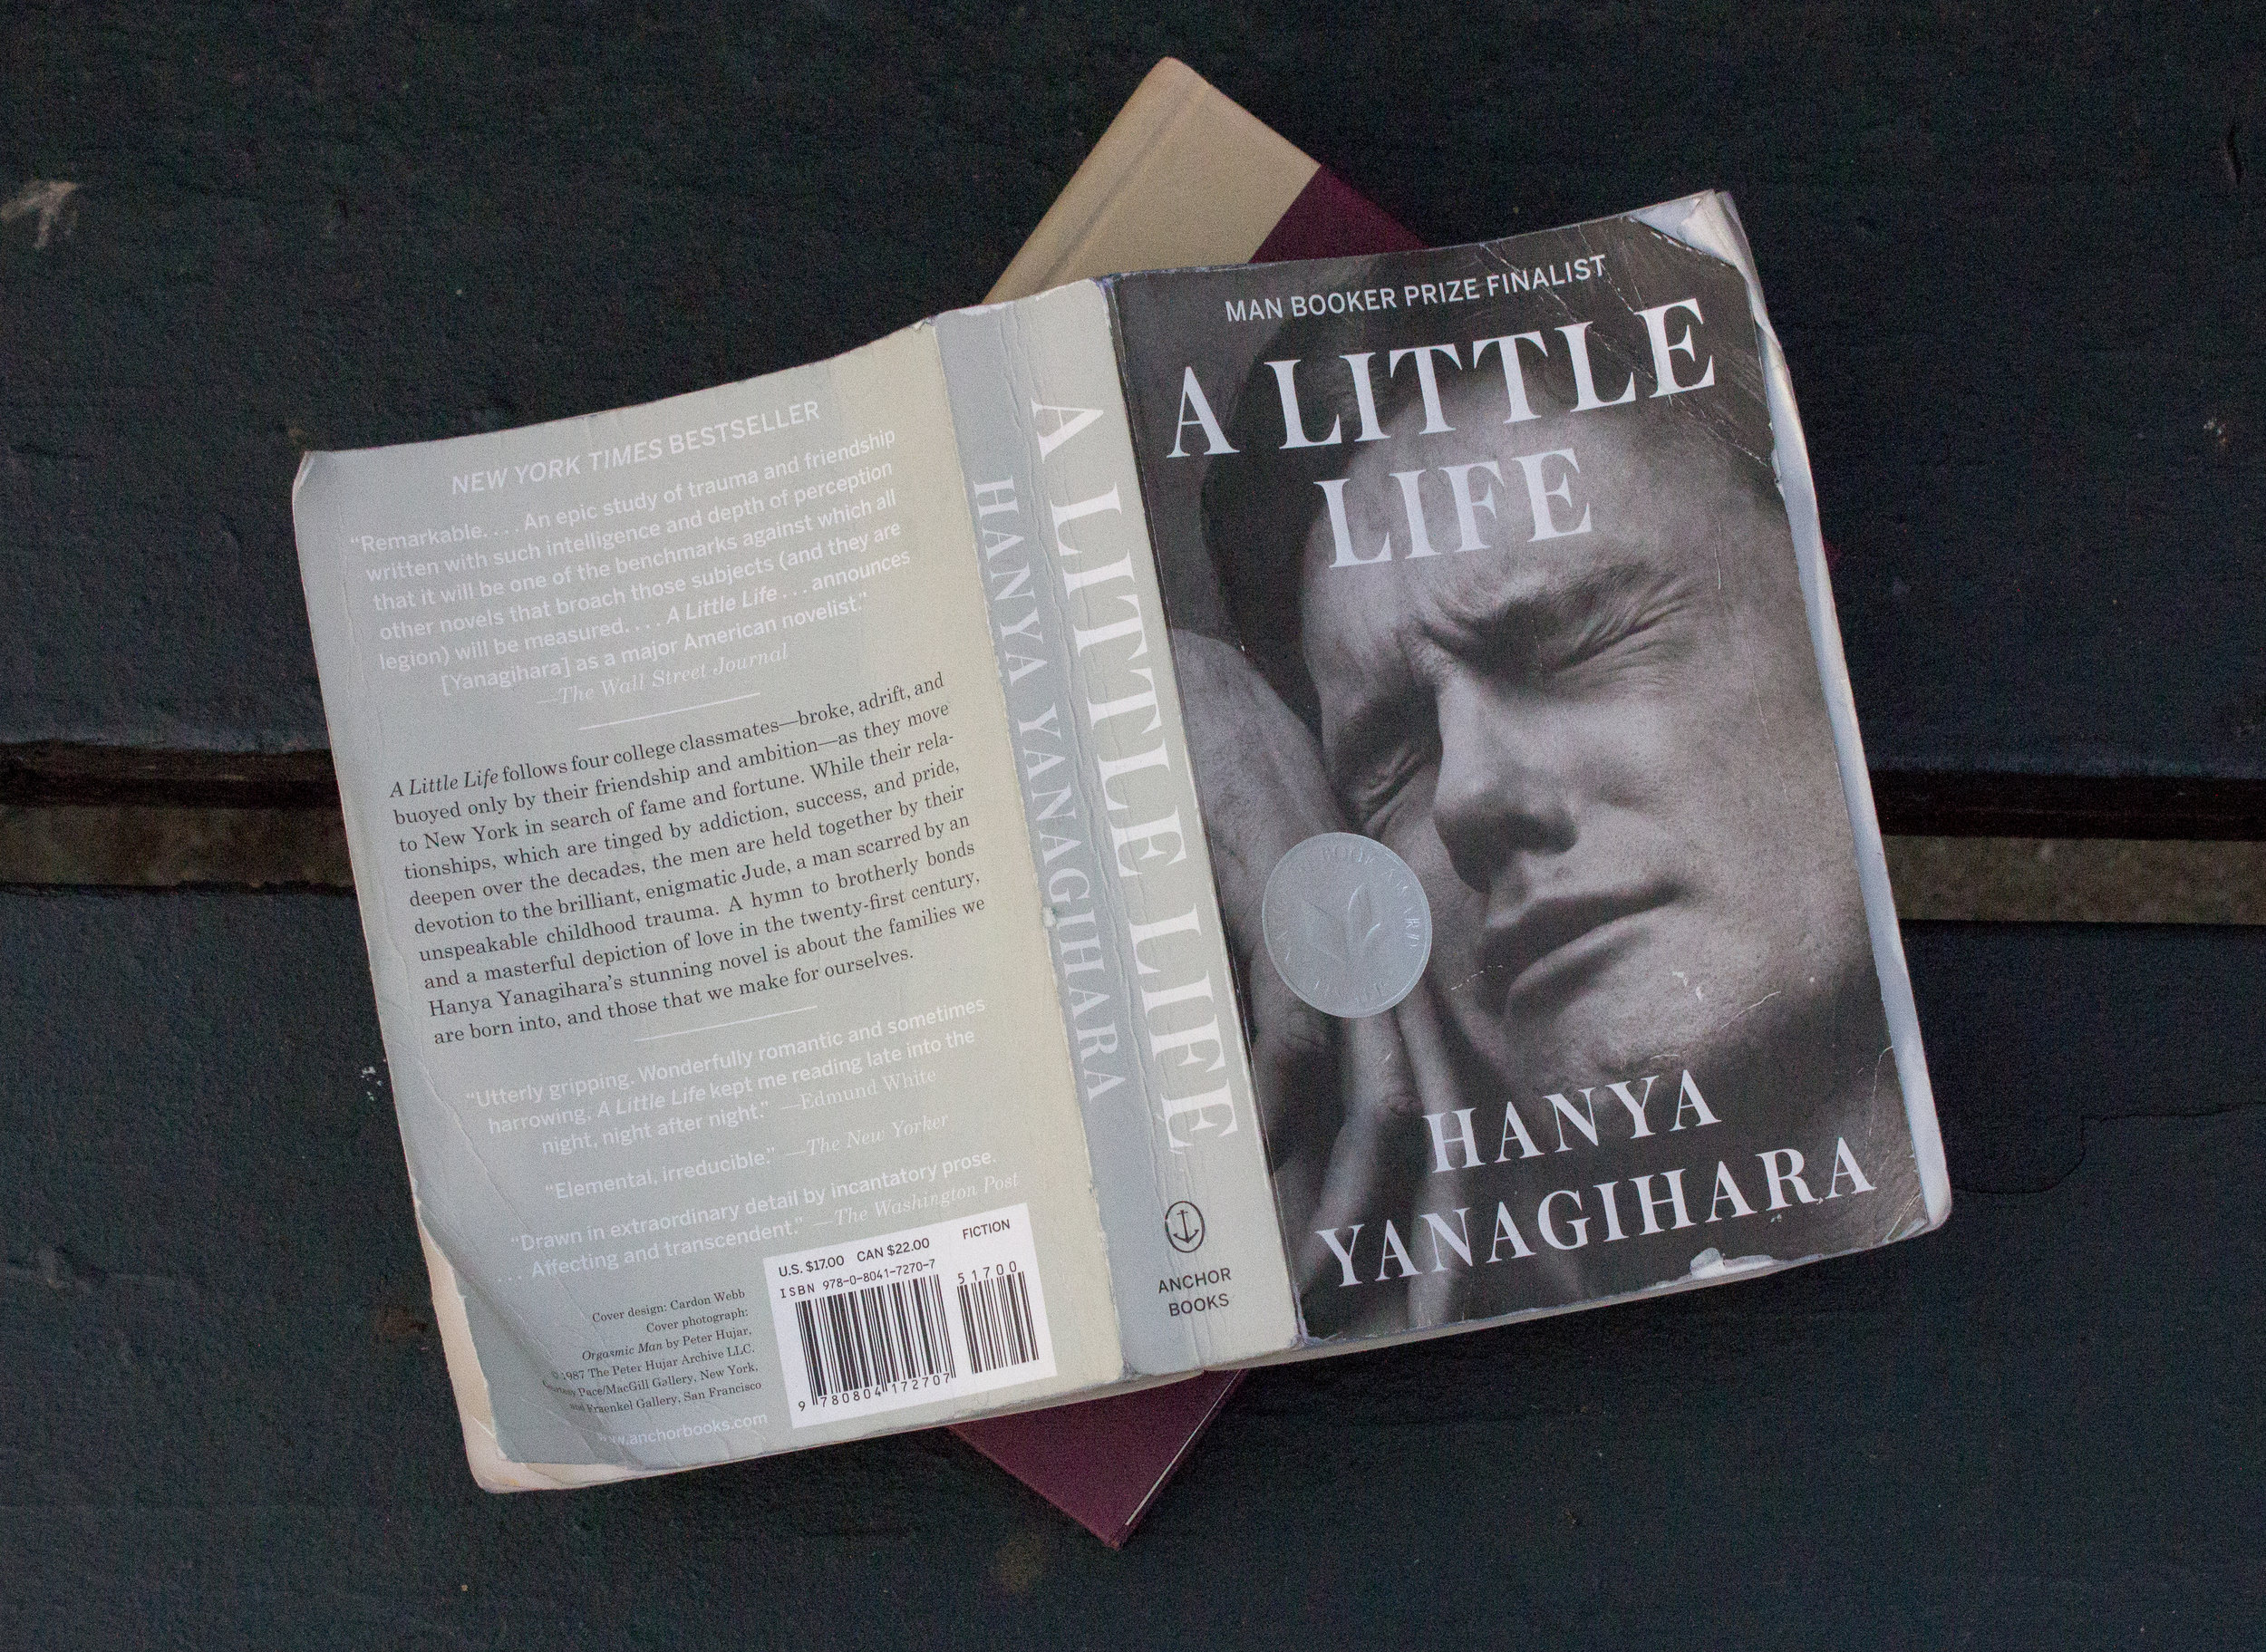 Little life книга. A little Life книга. A little Life hanya Yanagihara. Янагихара книги. Обложка книги a little Life.